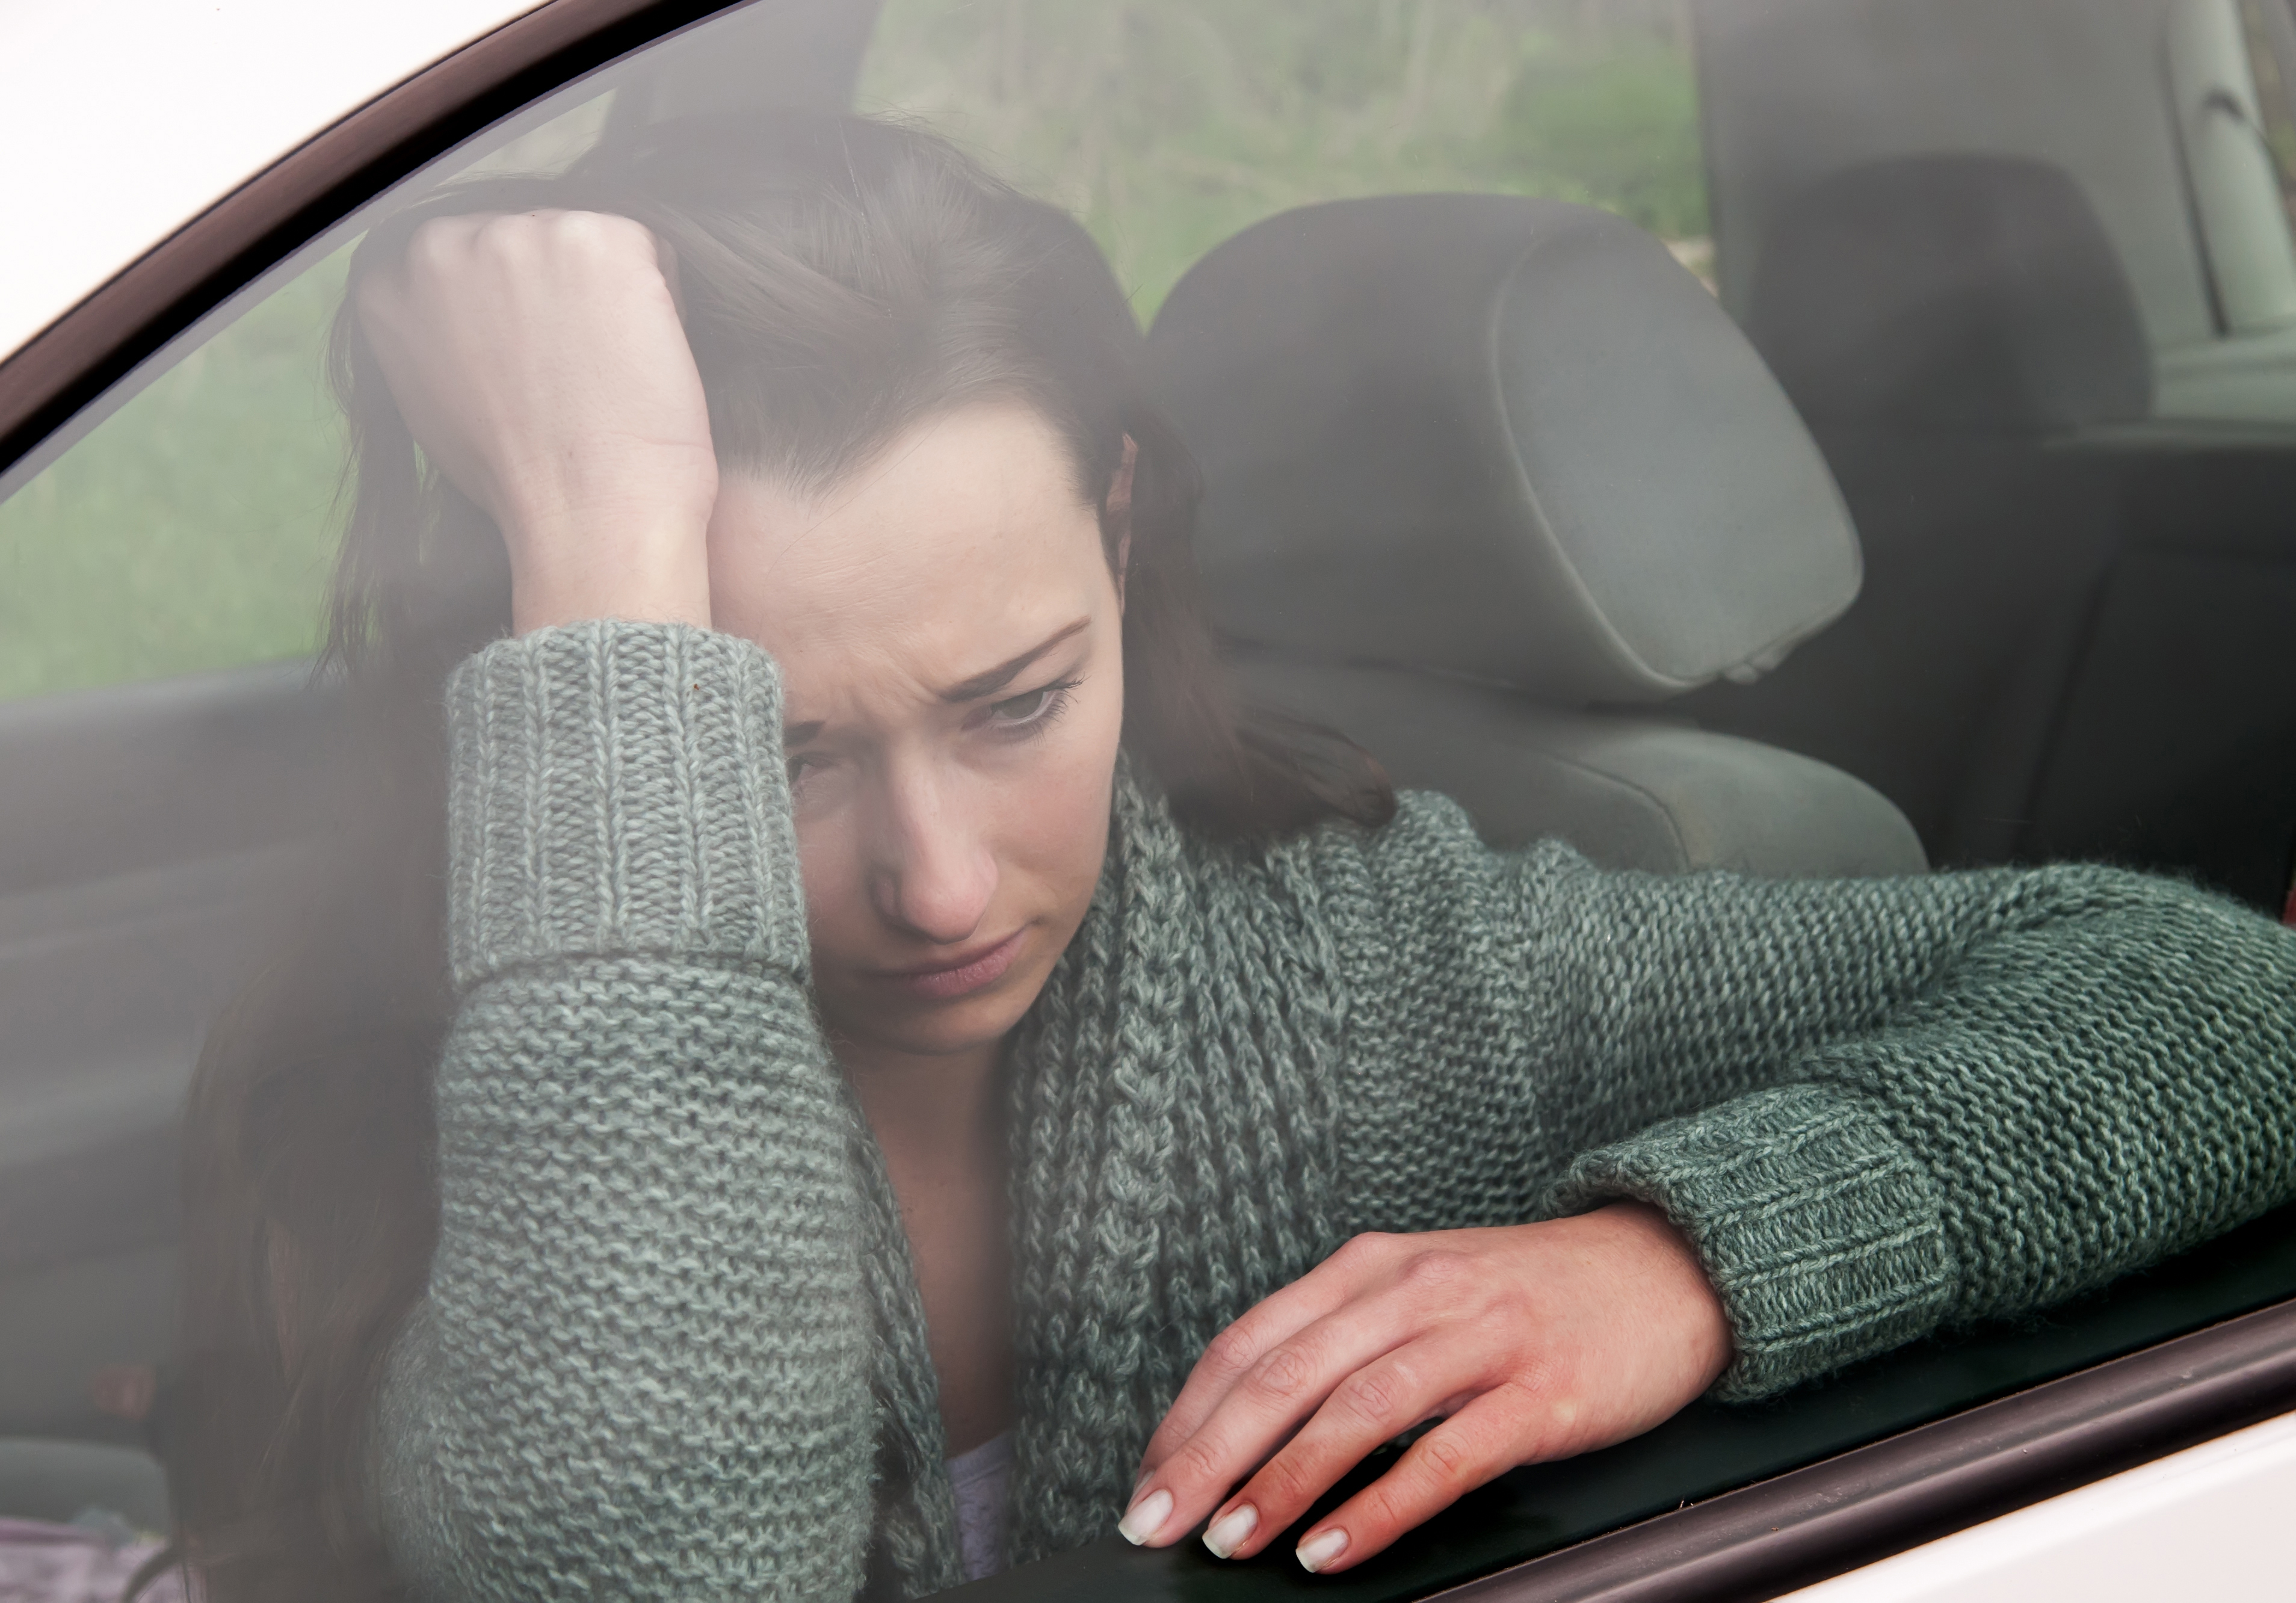 Joven triste en el Automóvil | Fuente: Shutterstock